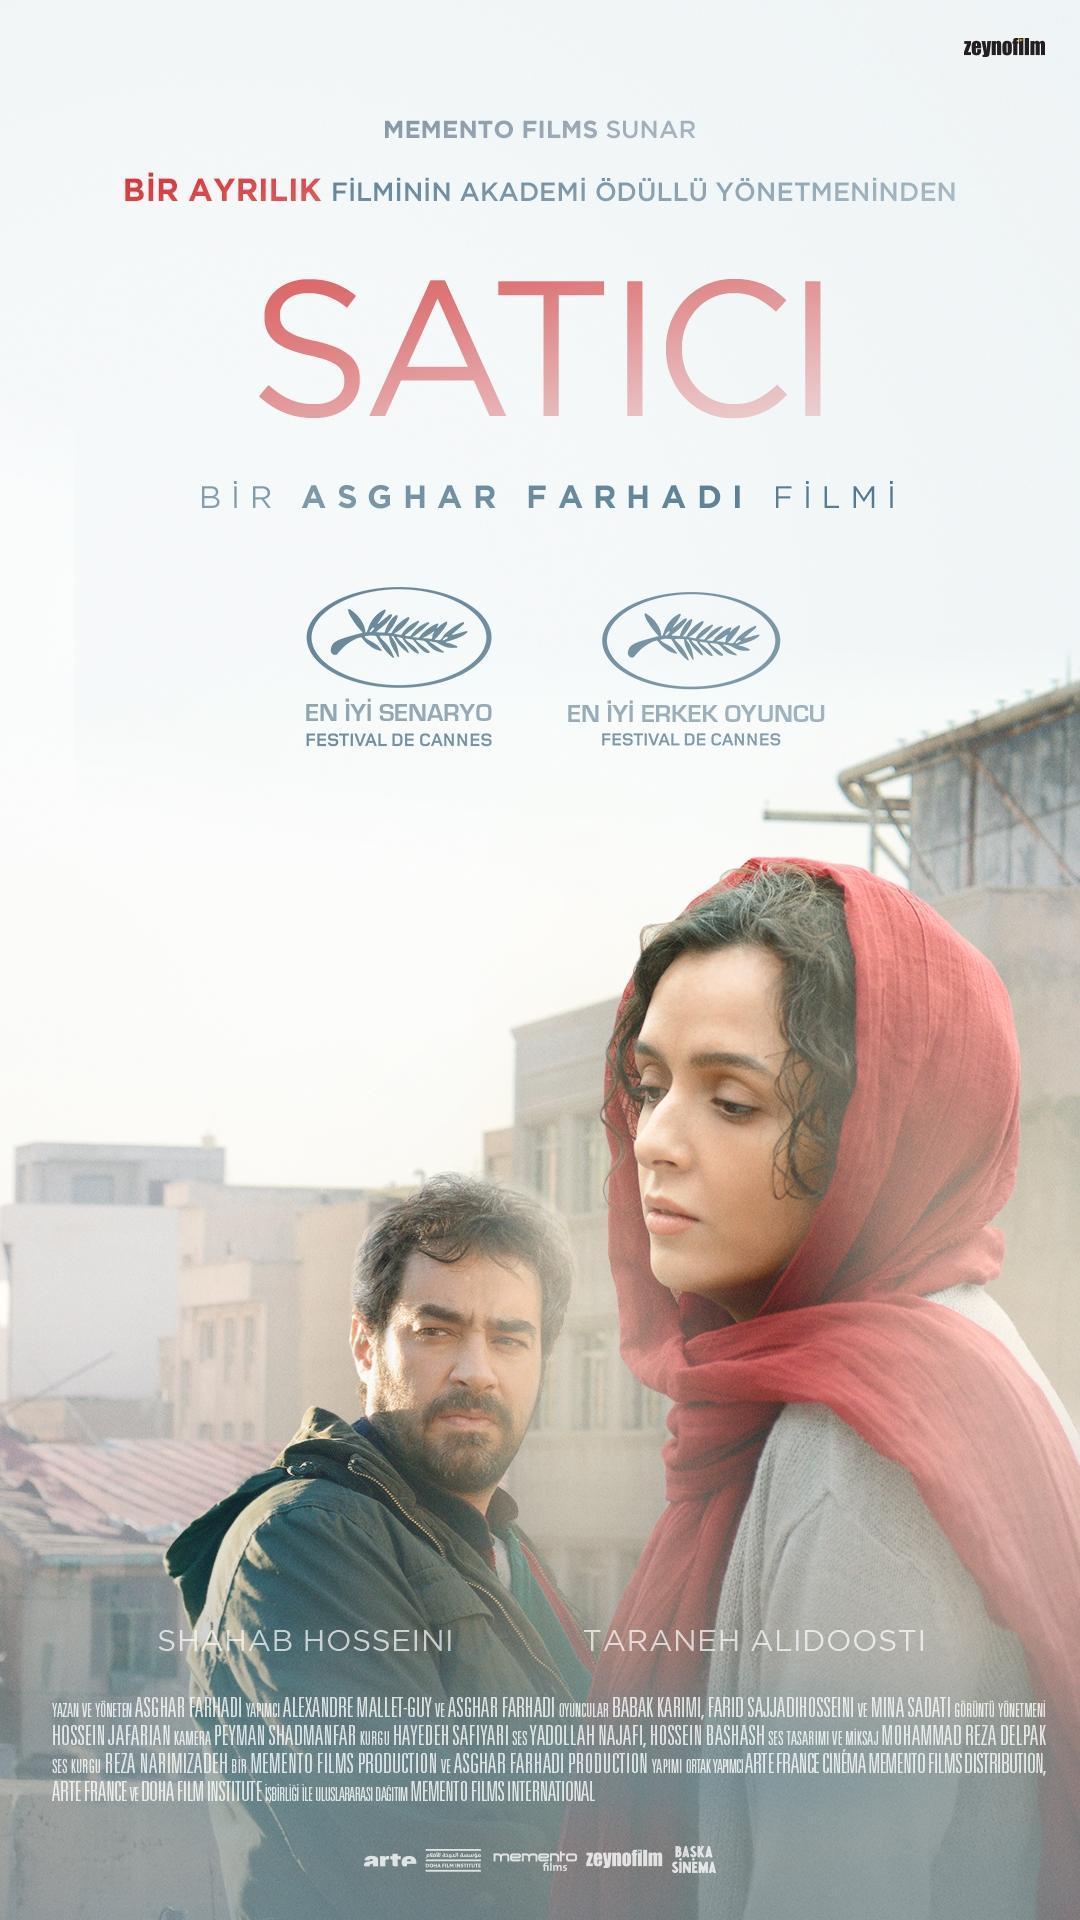 Oscarlı yönetmen Farhadinin yeni filmi Satıcı (The Salesman) vizyon için gün sayıyor